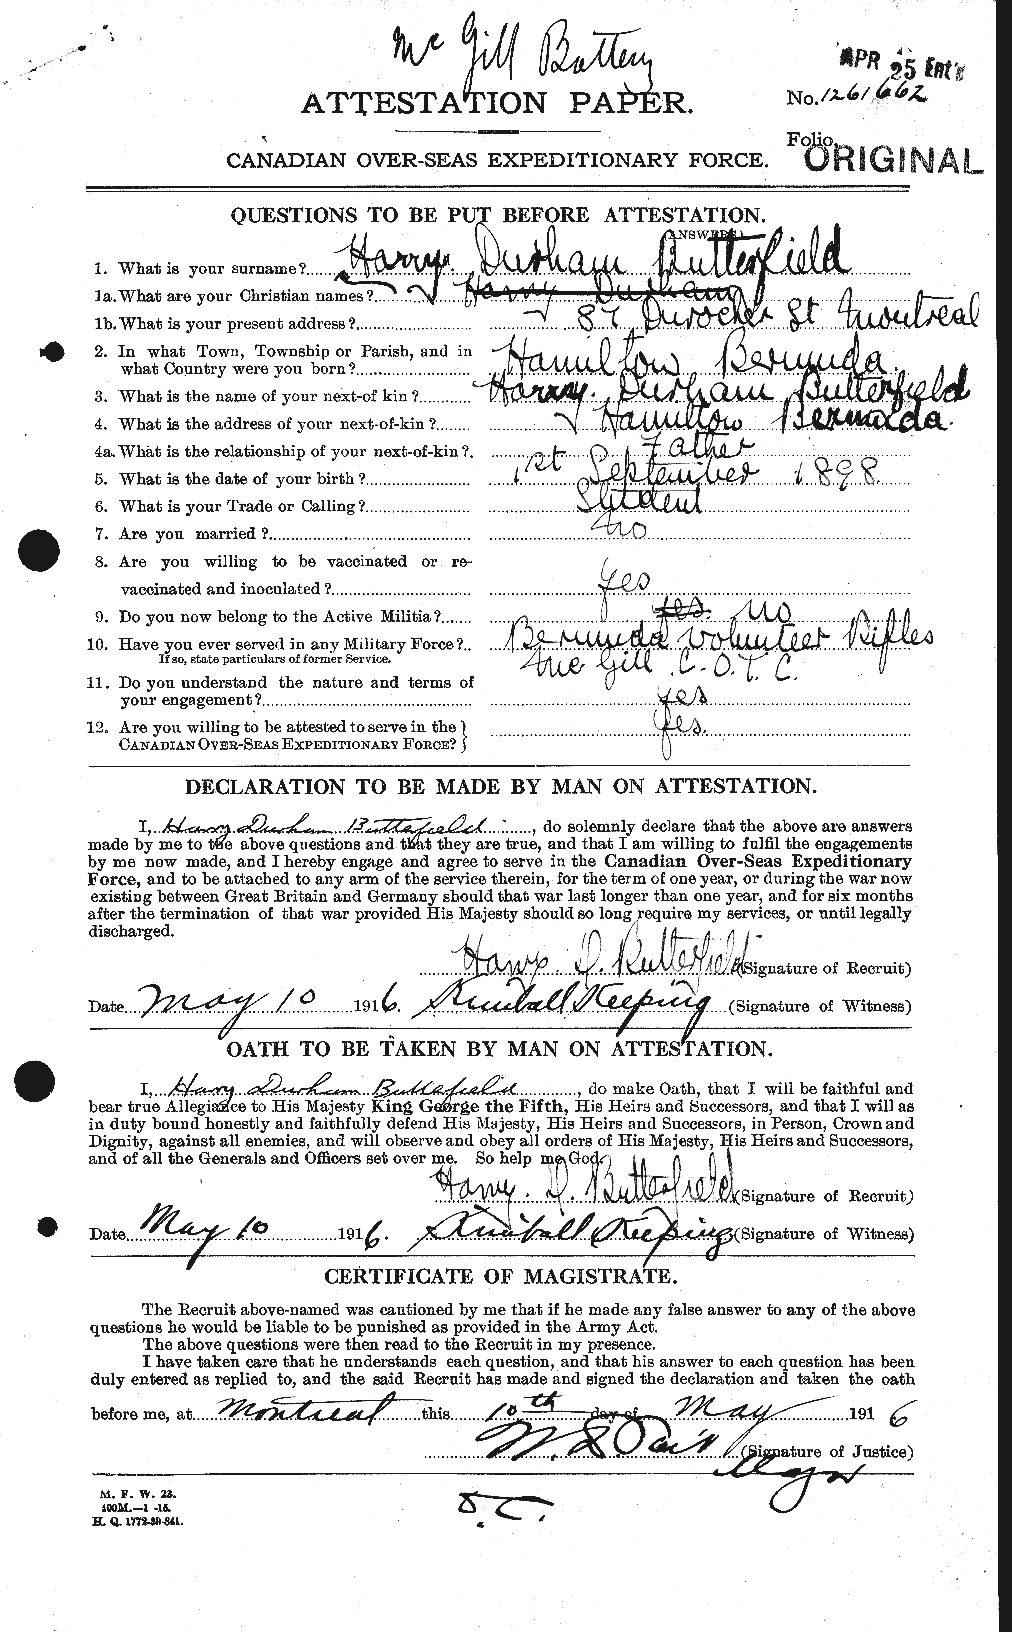 Dossiers du Personnel de la Première Guerre mondiale - CEC 278240a